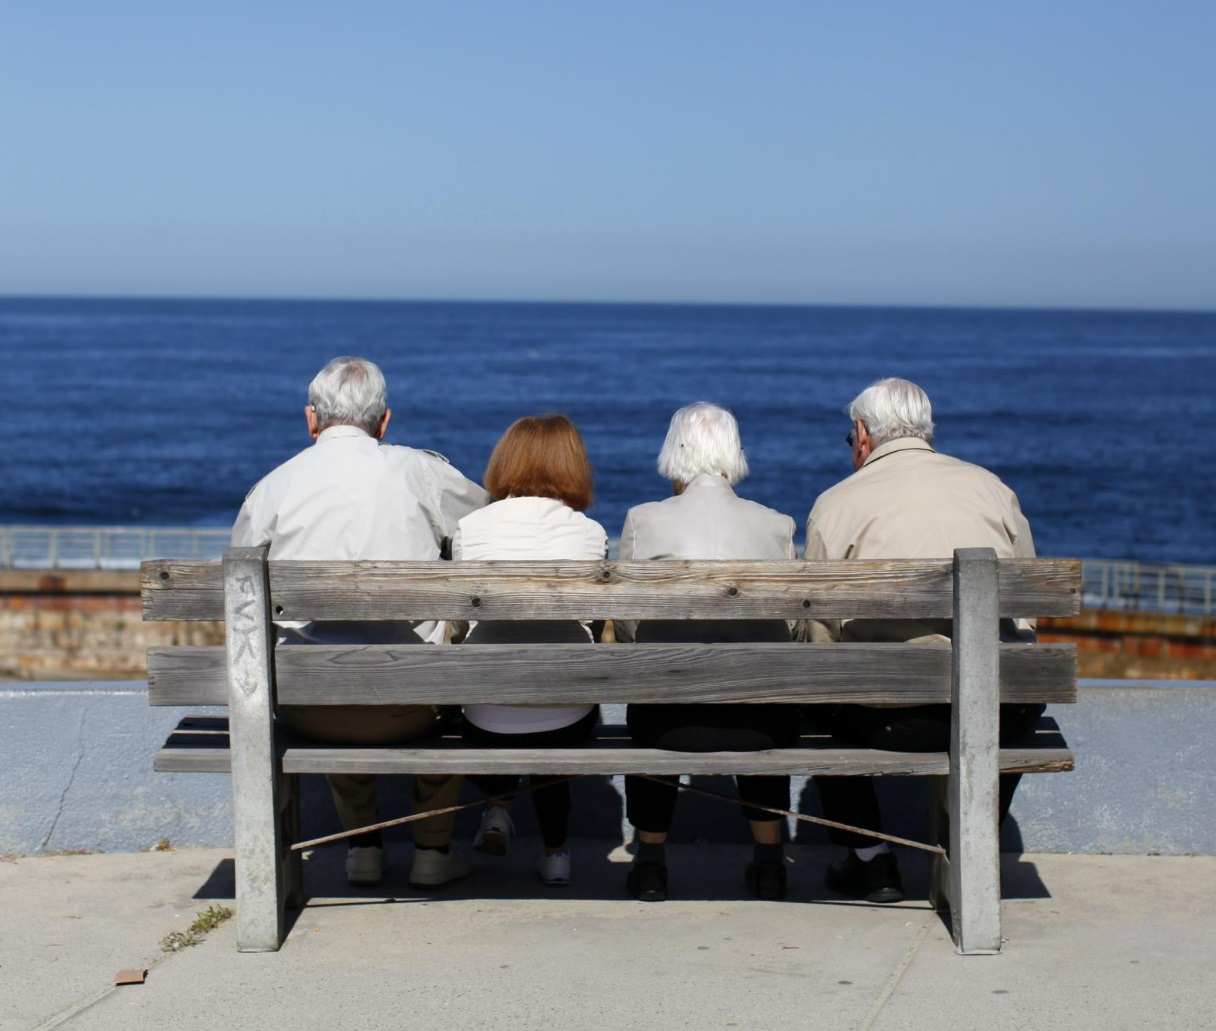 Repenser l’assurance pour une population vieillissante